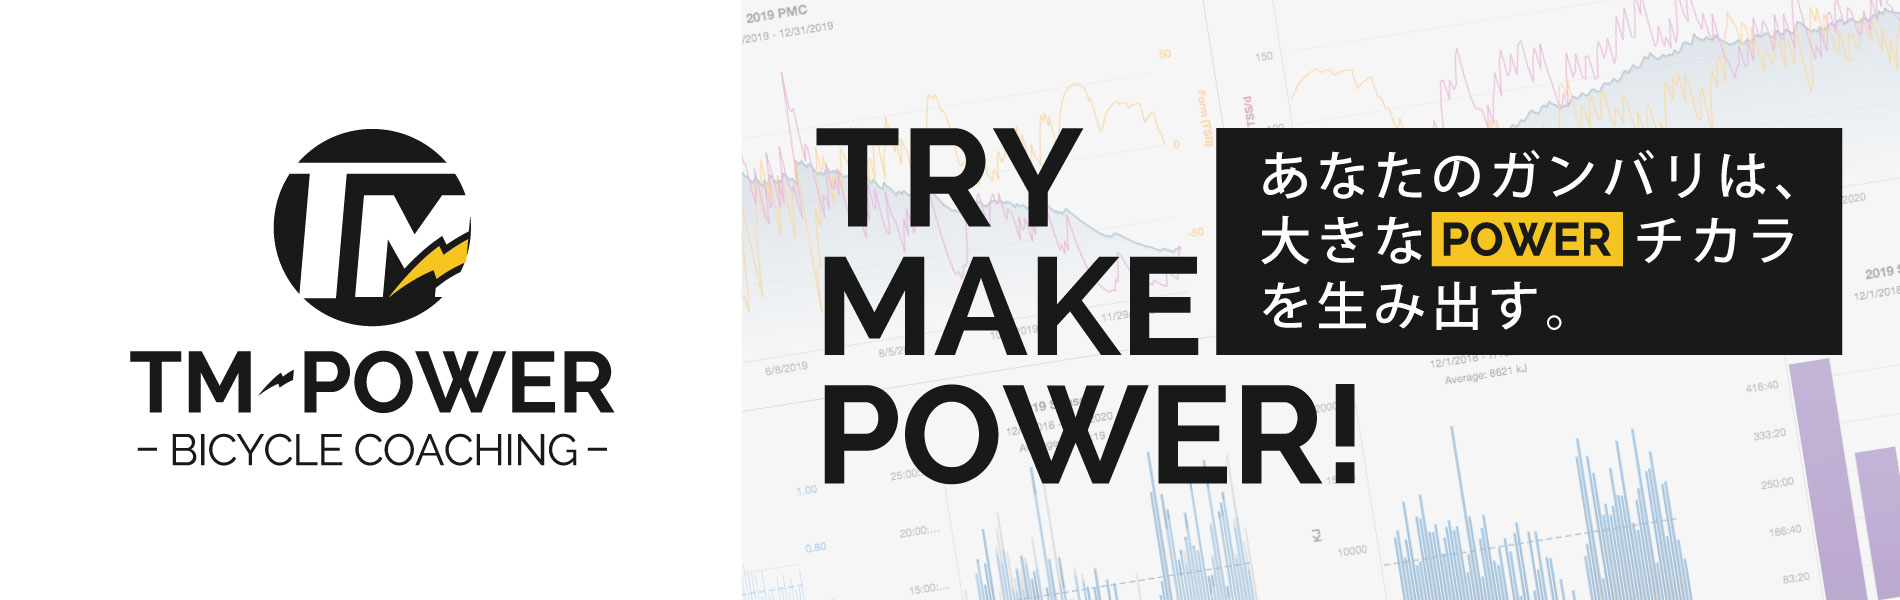 TM-POWER | TRY MAKE POWER!